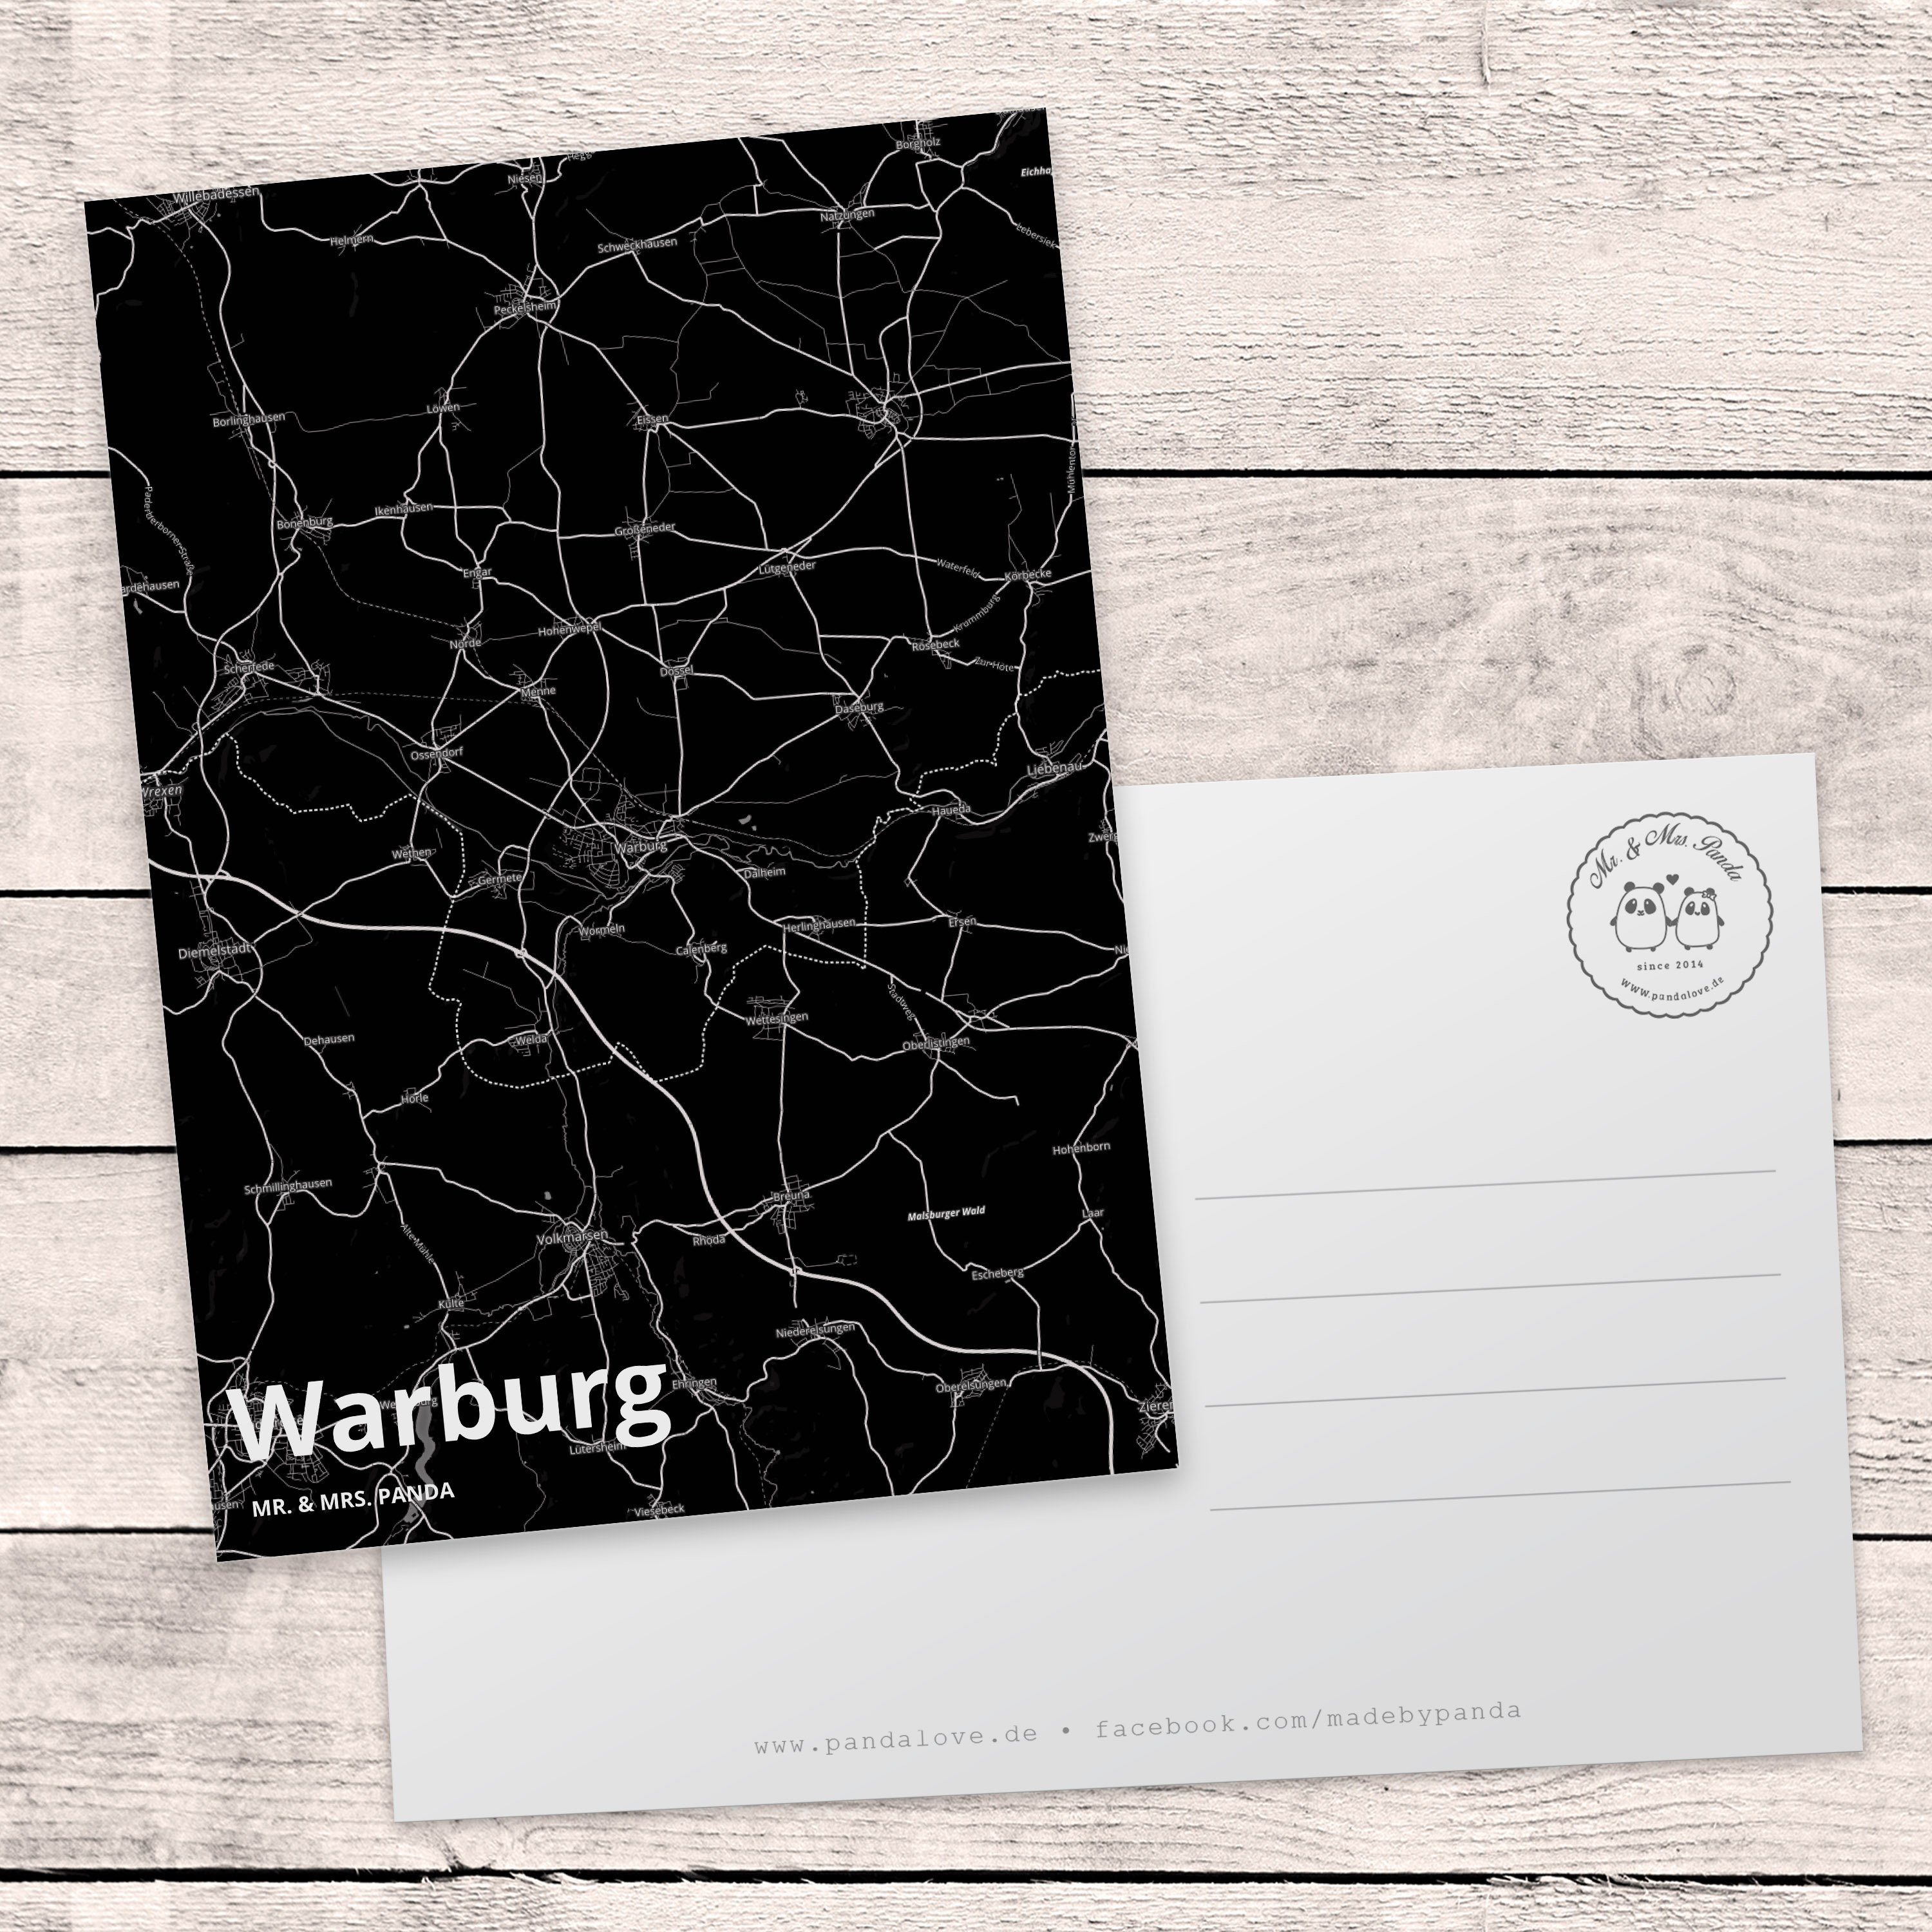 Postkarte & Warburg Geschenkkarte, Stadt, - Mr. Dankeskarte, Geschenk, Karte, St Mrs. Panda Ort,